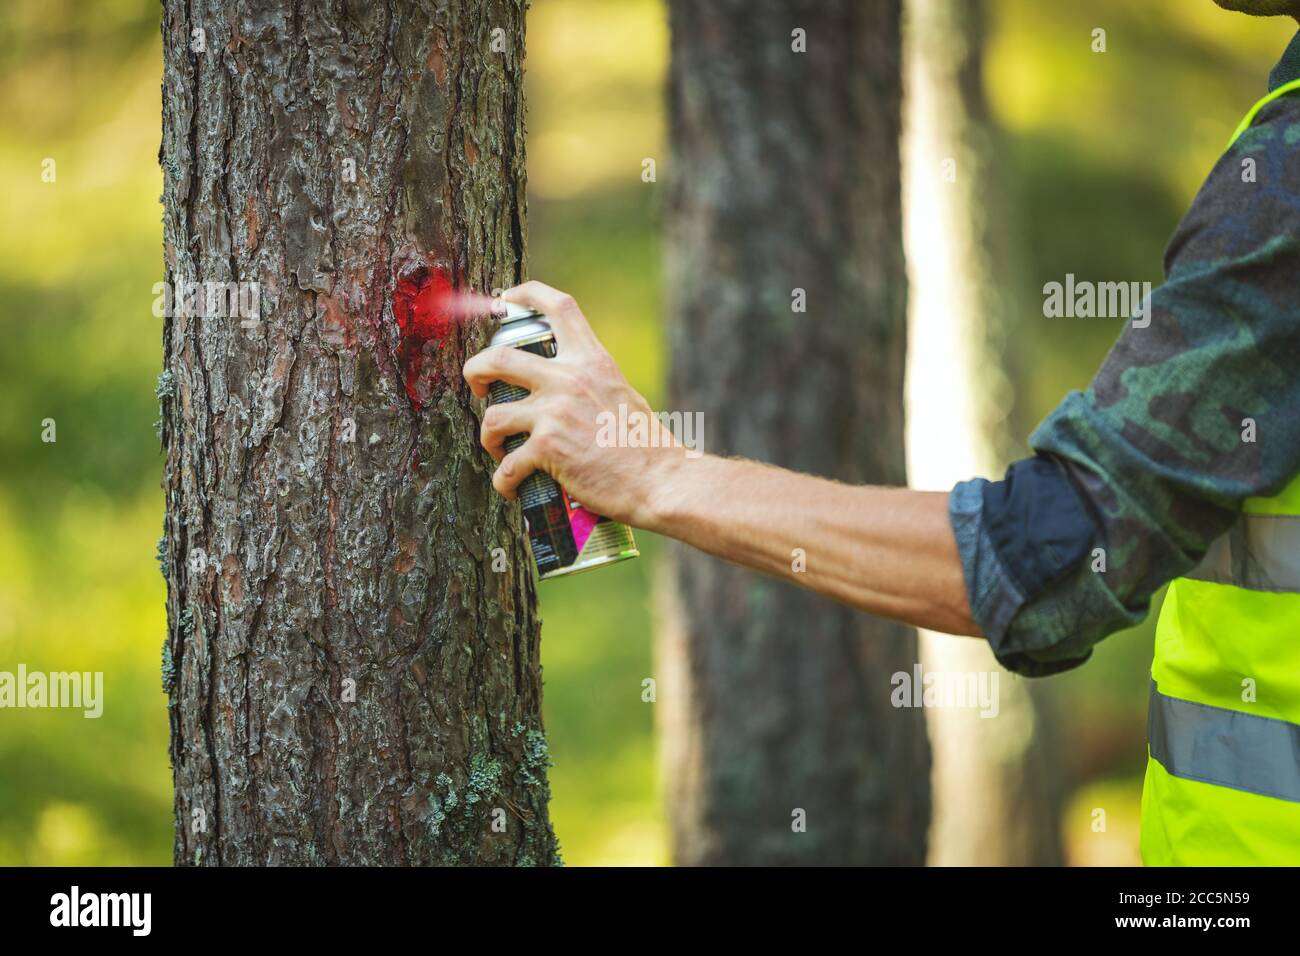 industria di tronchi - ingegnere forestale che contrassegna tronco di albero con rosso spray per il taglio nel processo di deforestazione Foto Stock